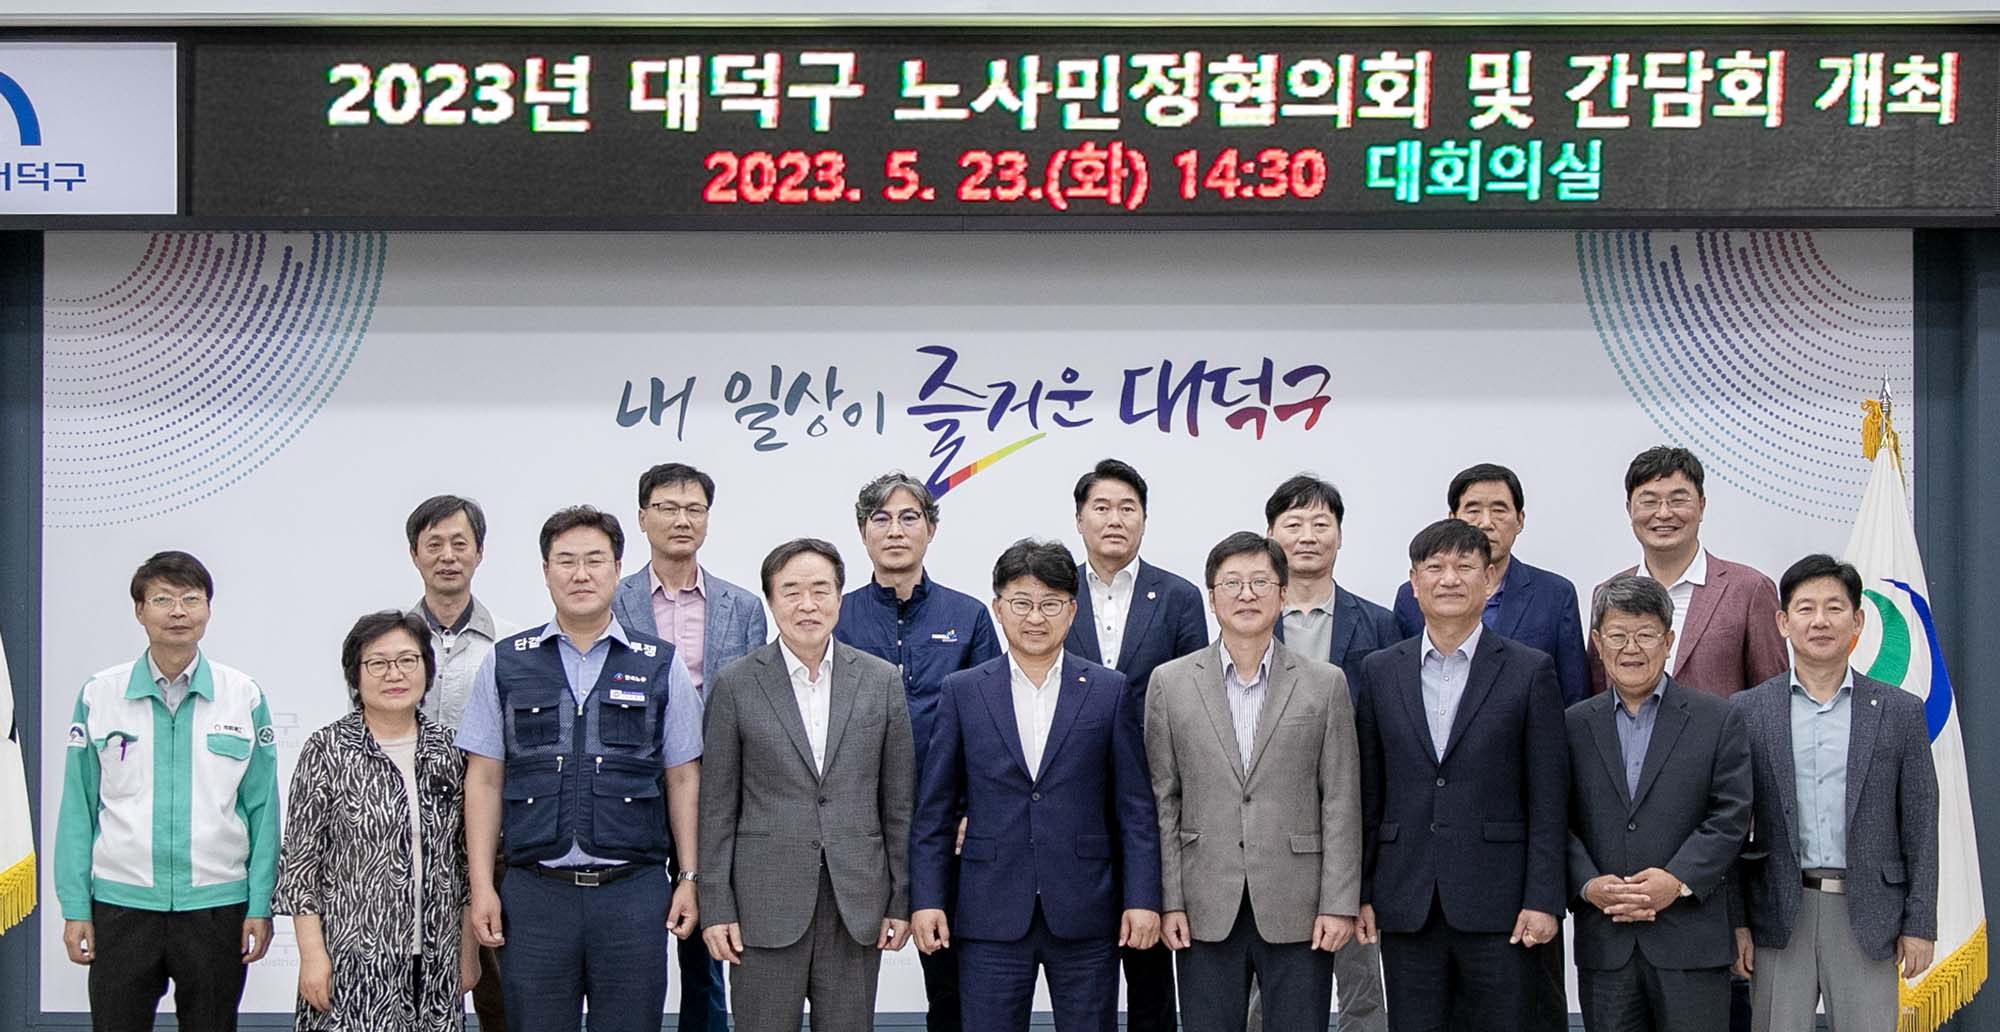 (2023.5.23.) 2023년 노사민정협의회 및 간담회 개최